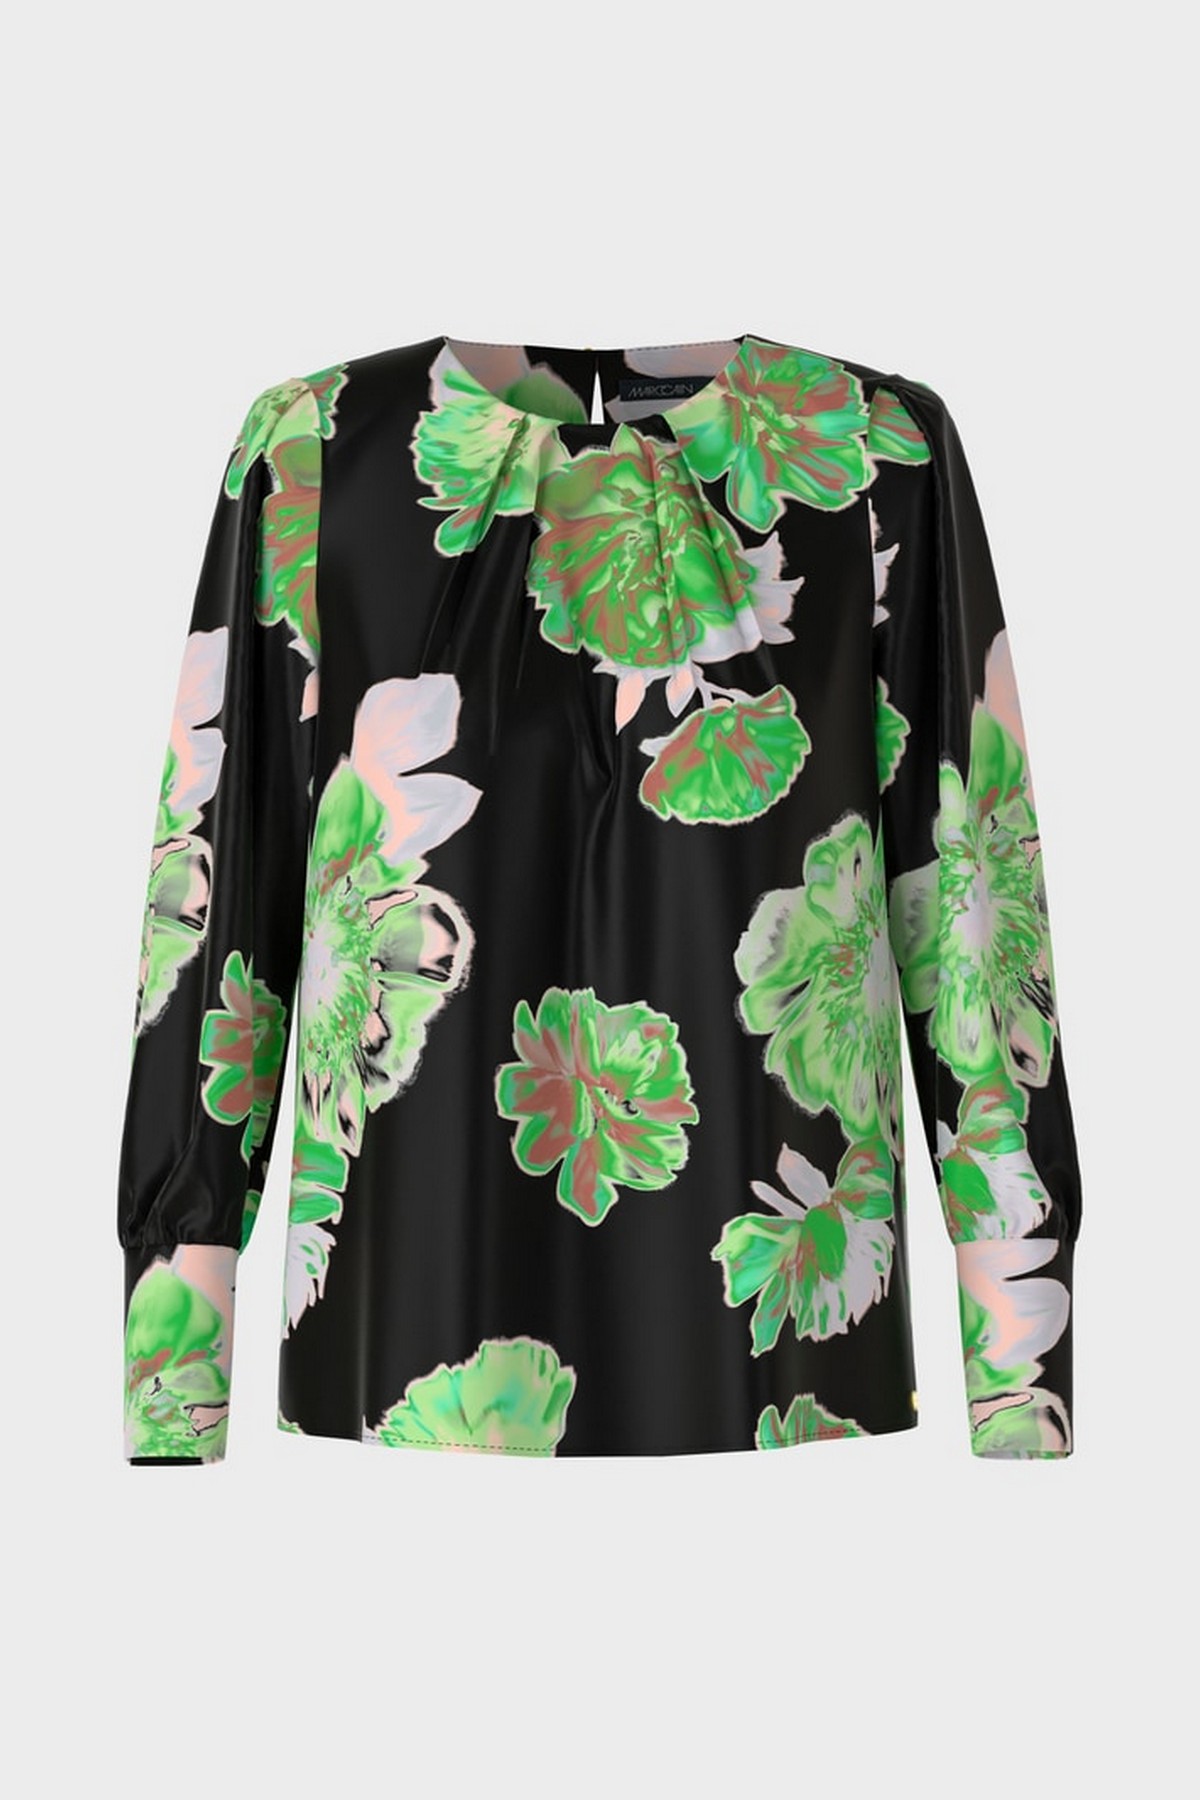 Shirtbloes bloemenprint in de kleur zwart groen van het merk Marc Cain Collections